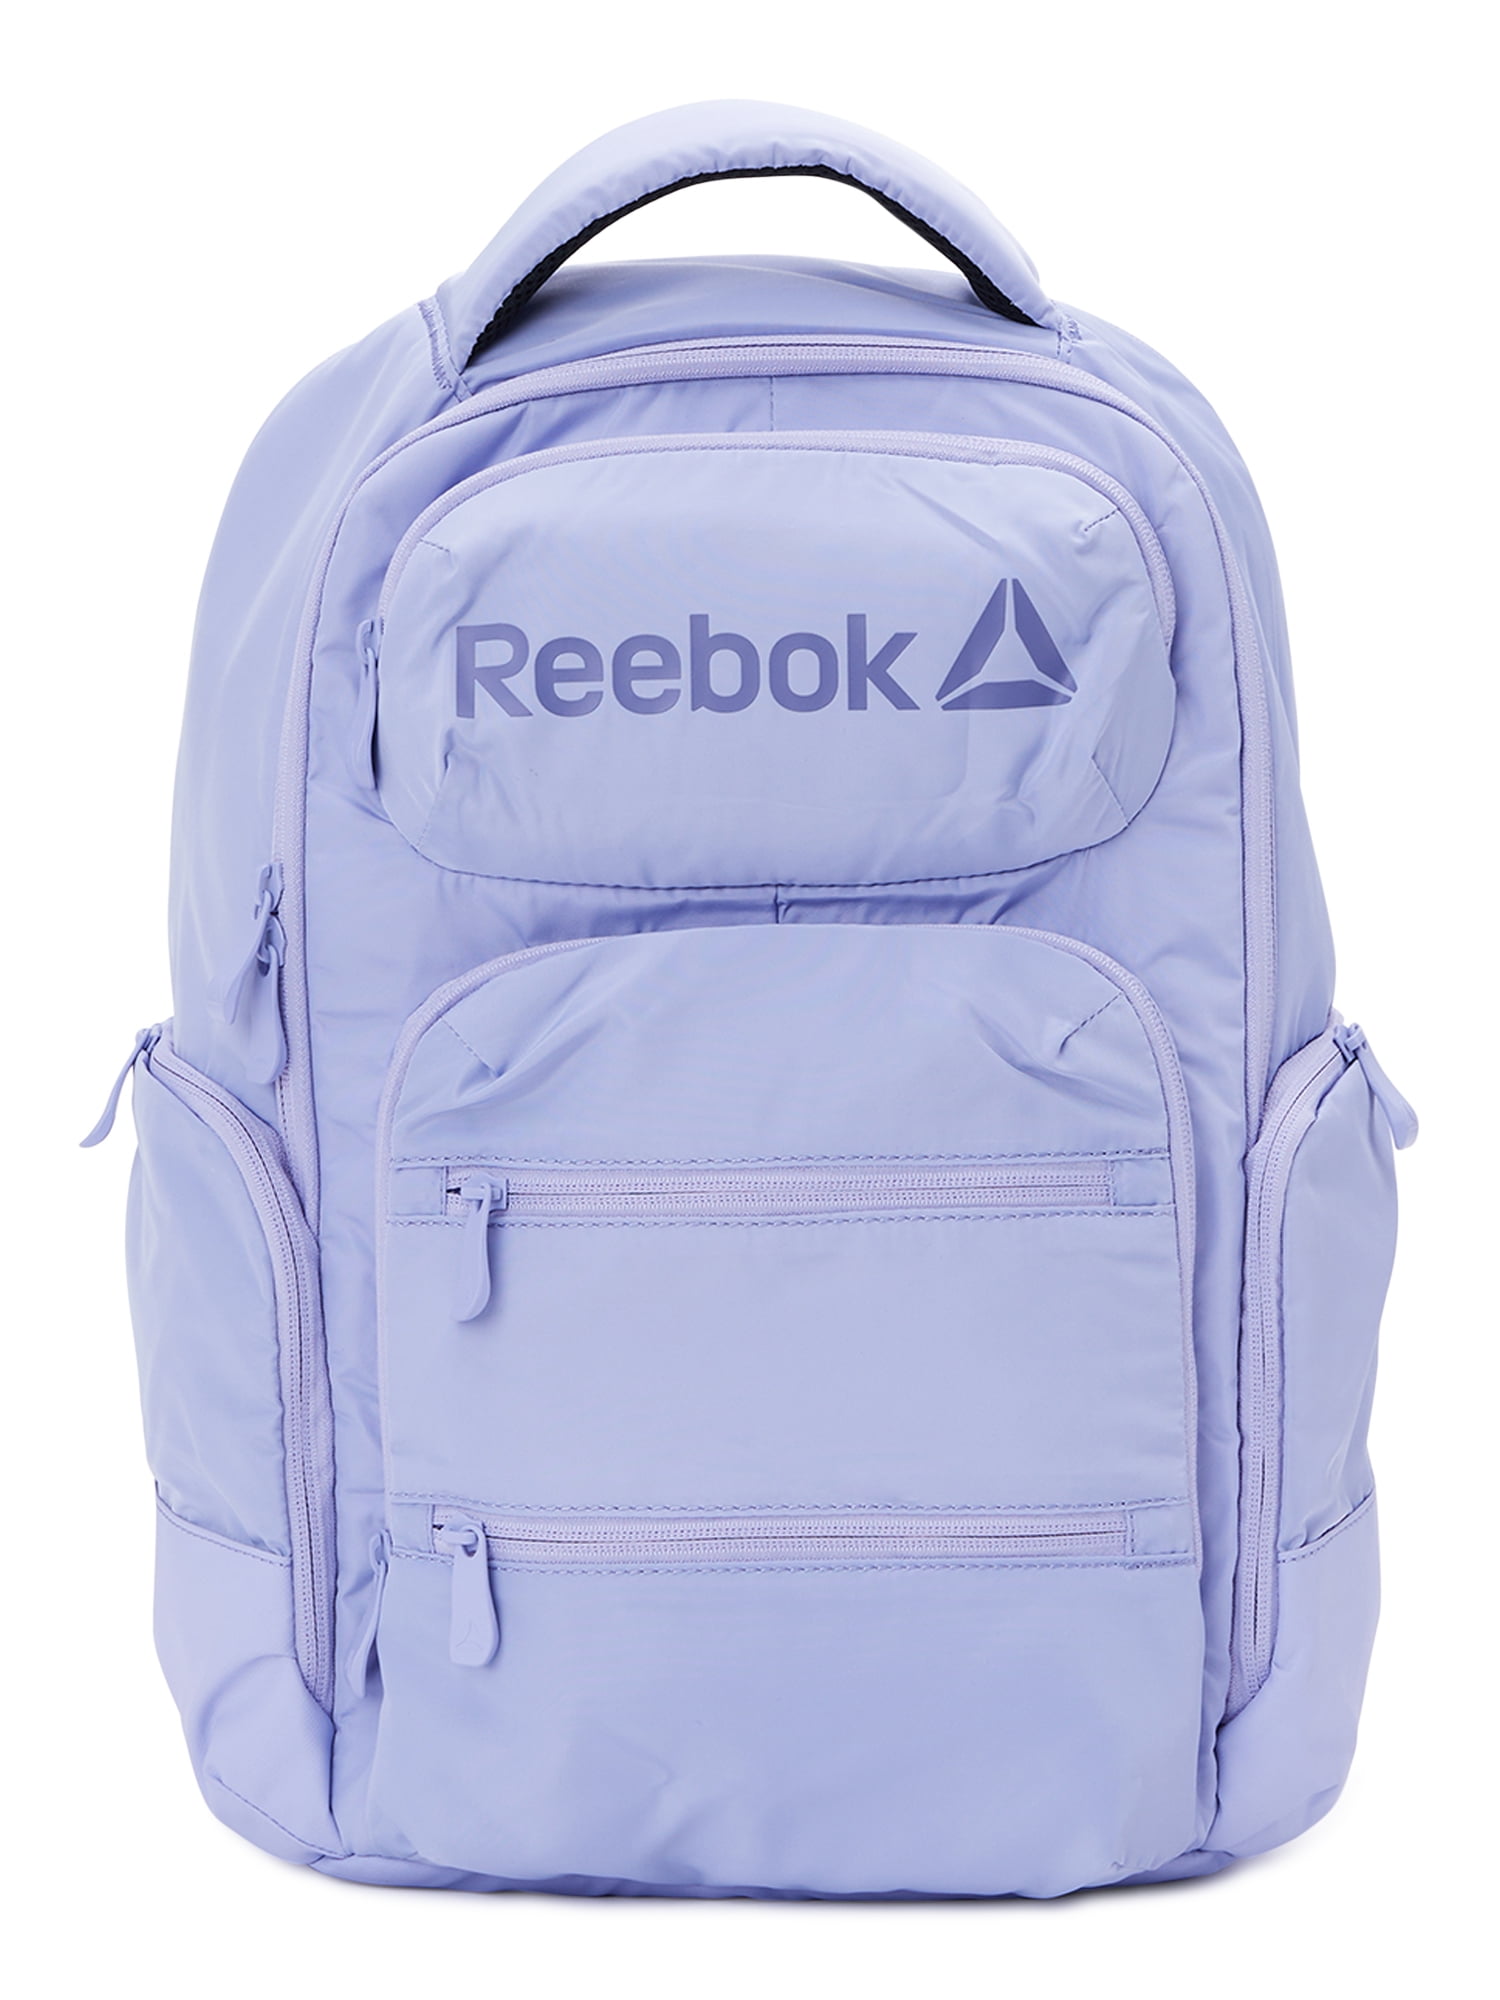 Mod viljen hed trængsler Reebok Unisex Adult Winter 16" Laptop Backpack, Sweet Lavender - Walmart.com